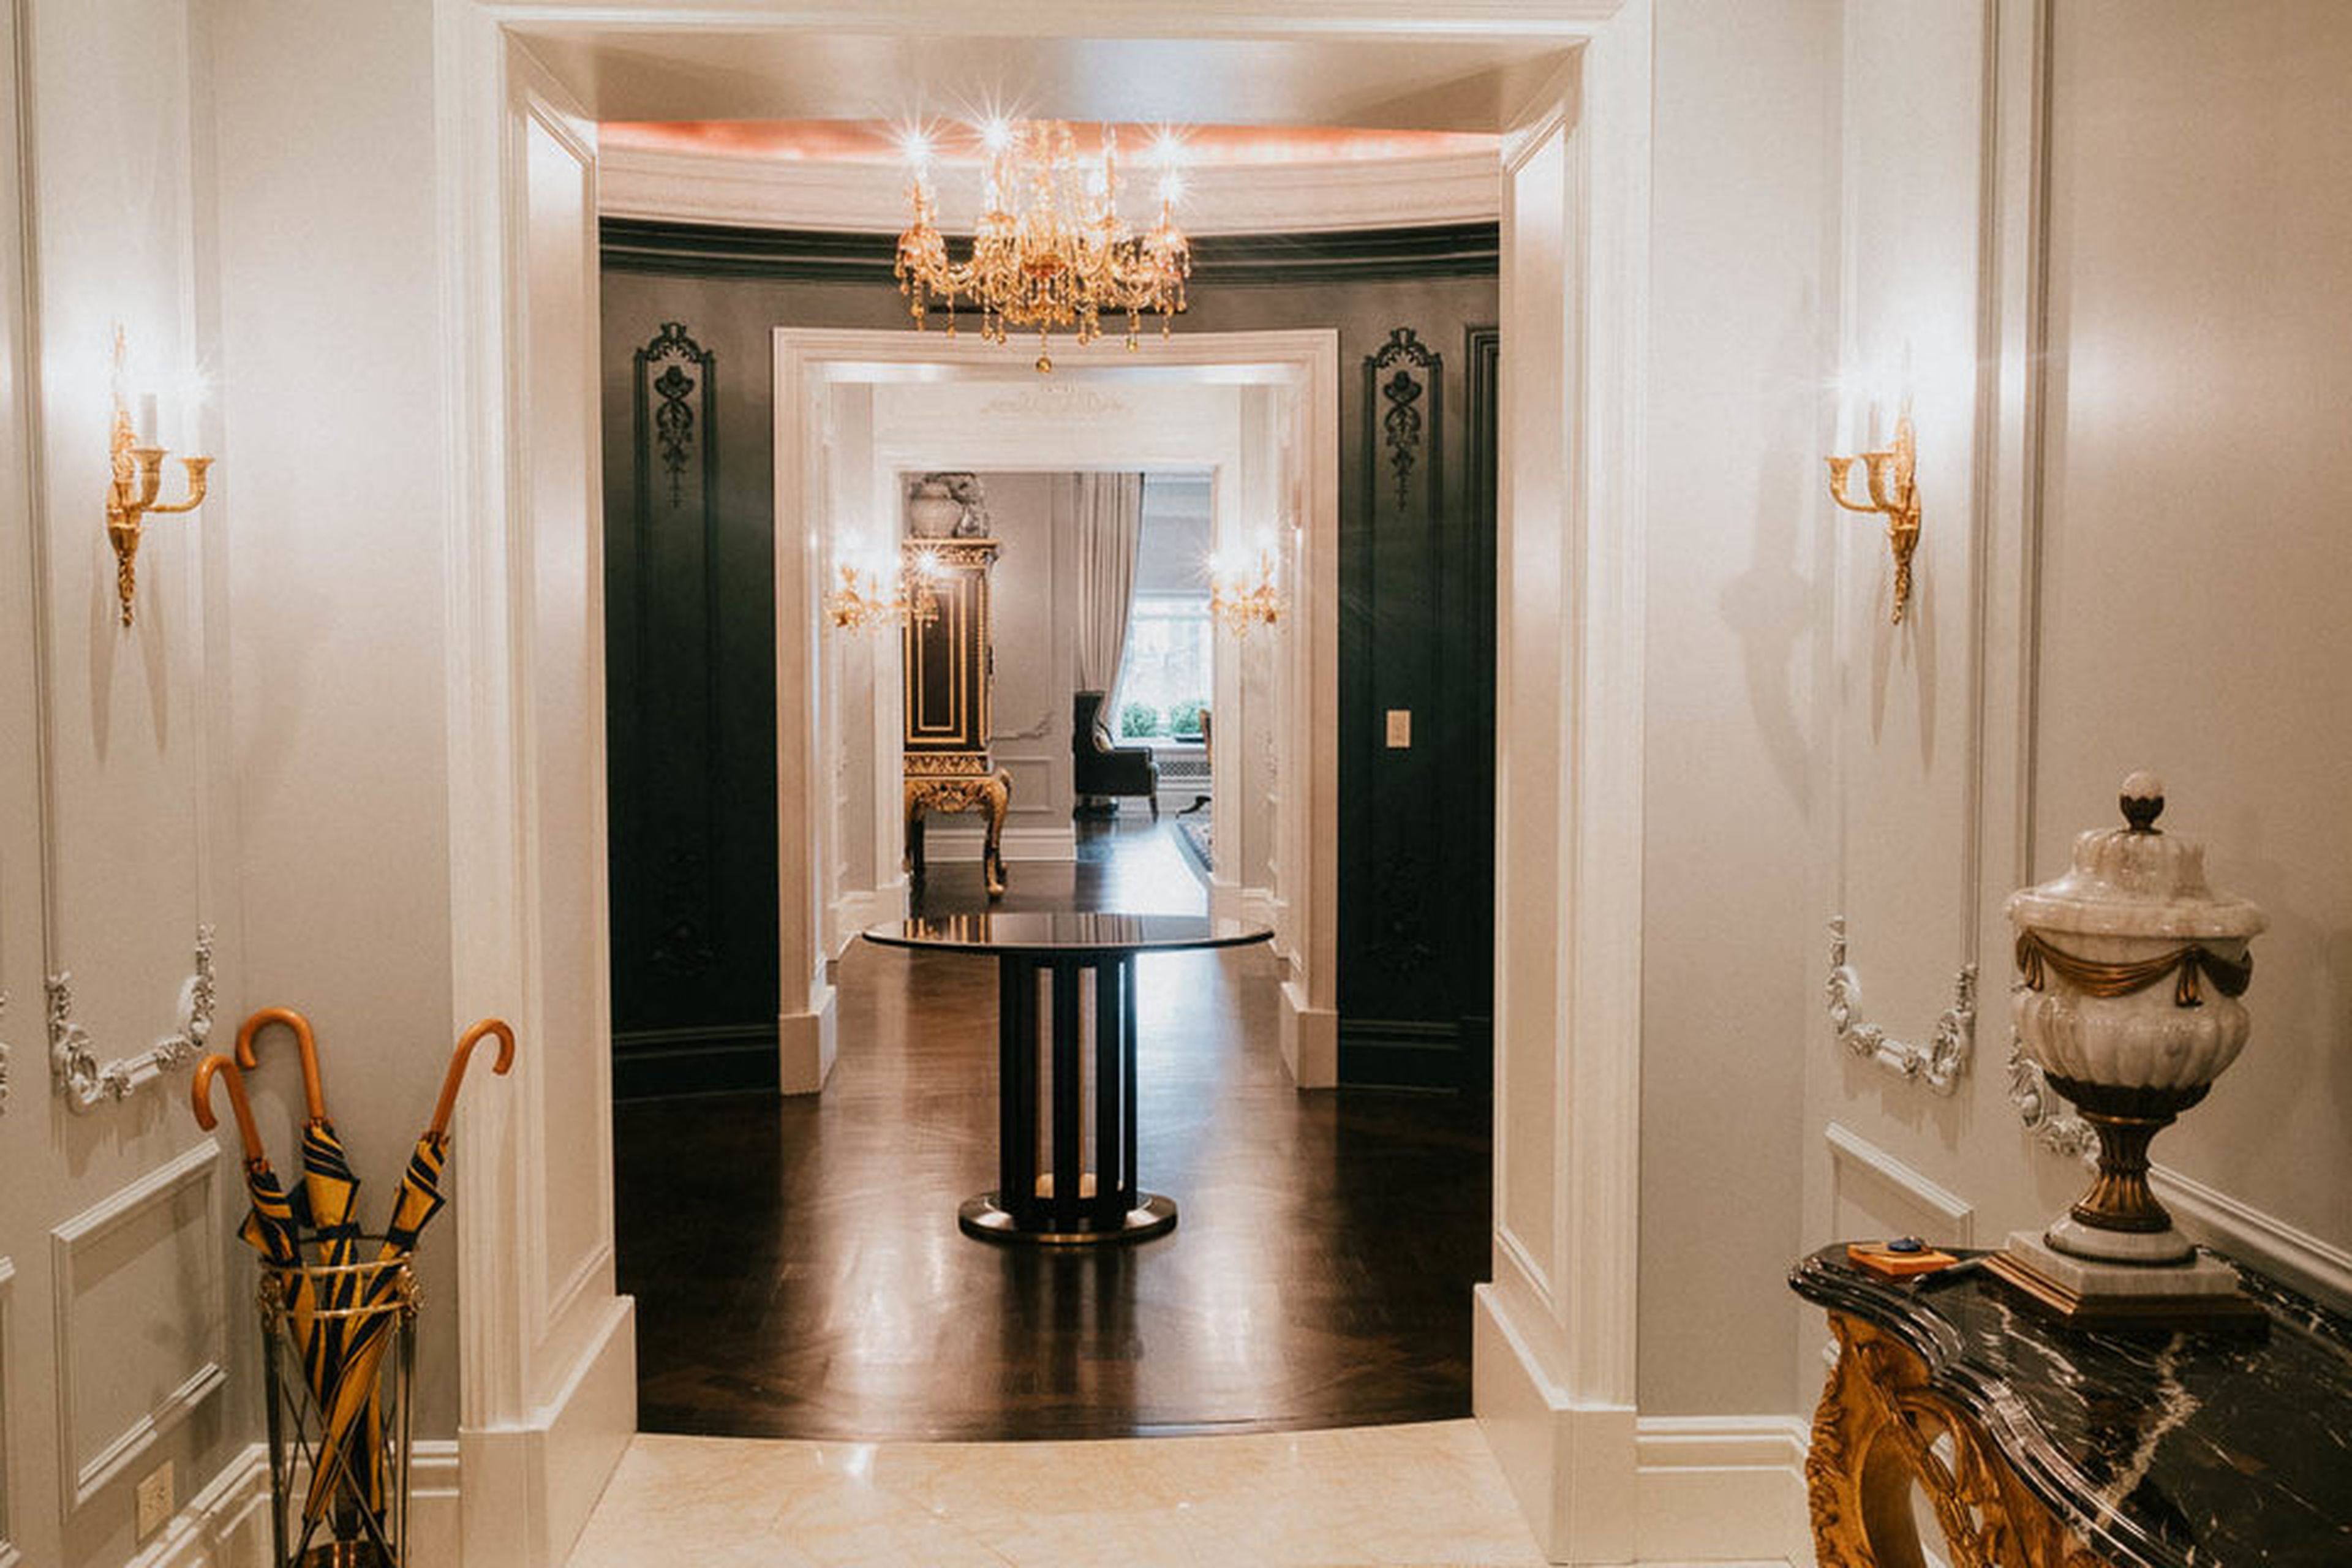 El recibidor de la entrada es elegante. El estilo decorativo de la suite está inspirado en la corte real de Luis XV. Evoca ciertamente a Versalles por dentro.